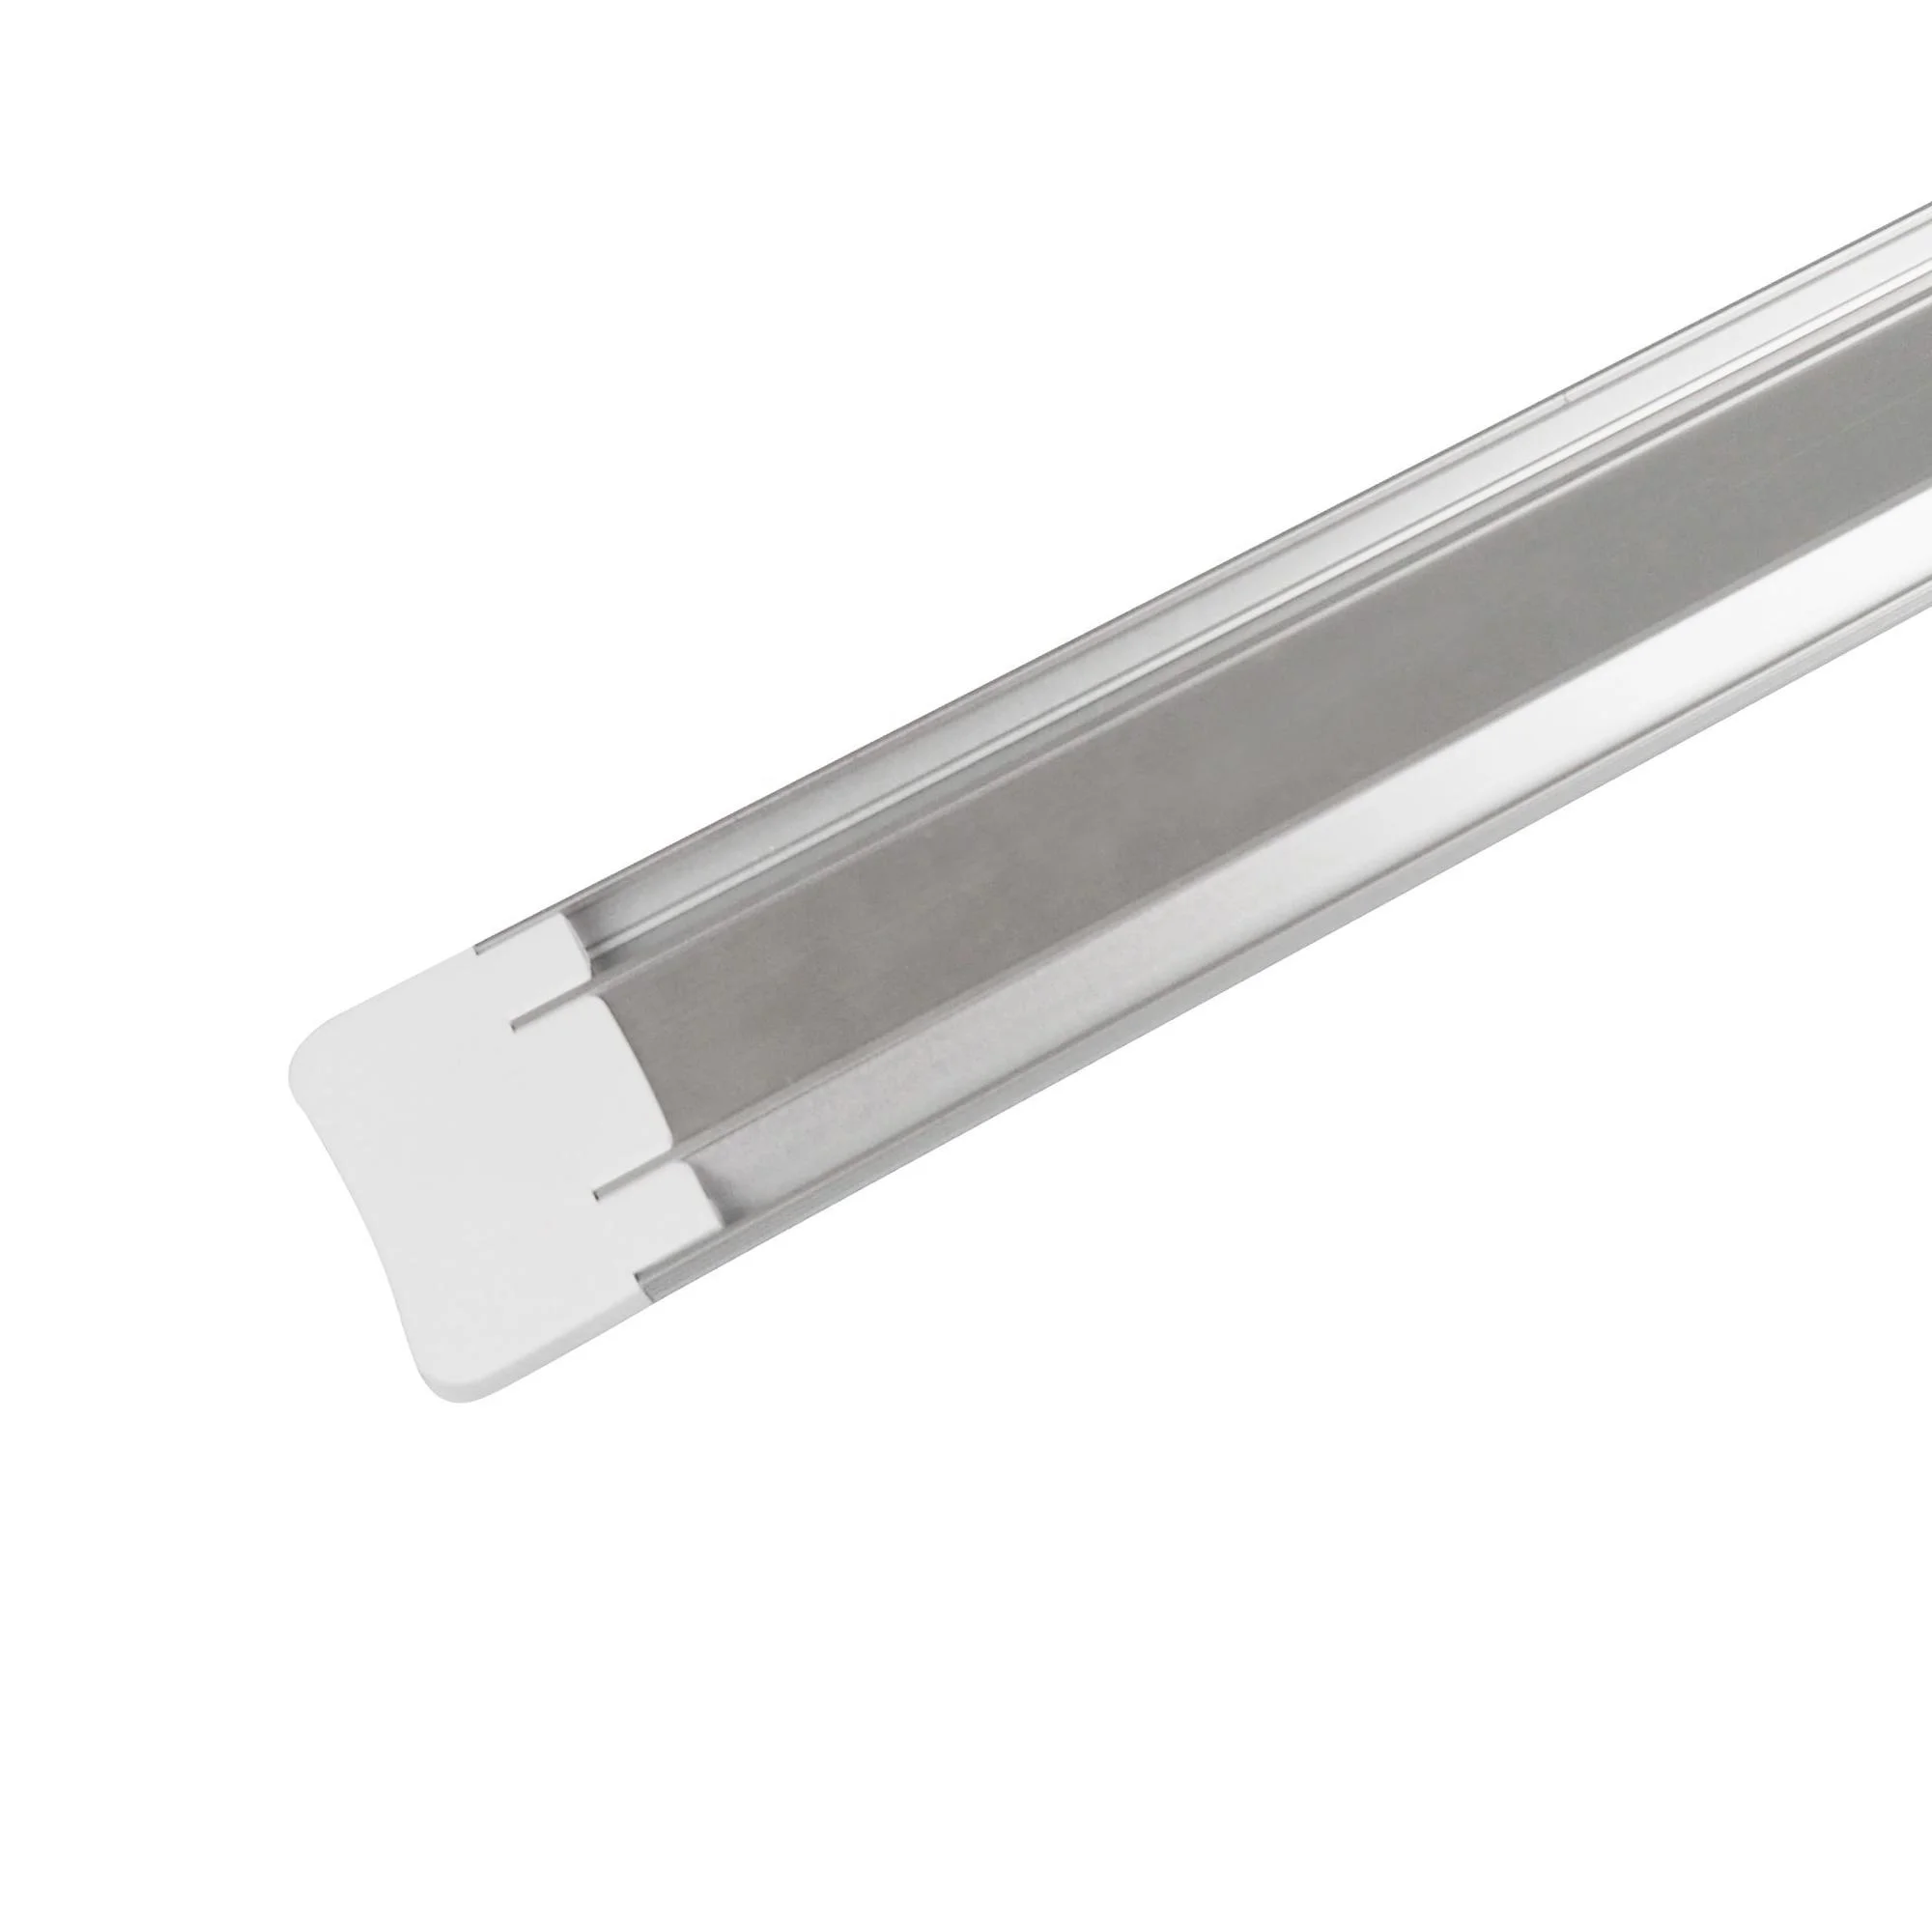 Ningbo slim design aluminum base 16w 1280lm IP20 led batten light for store,office